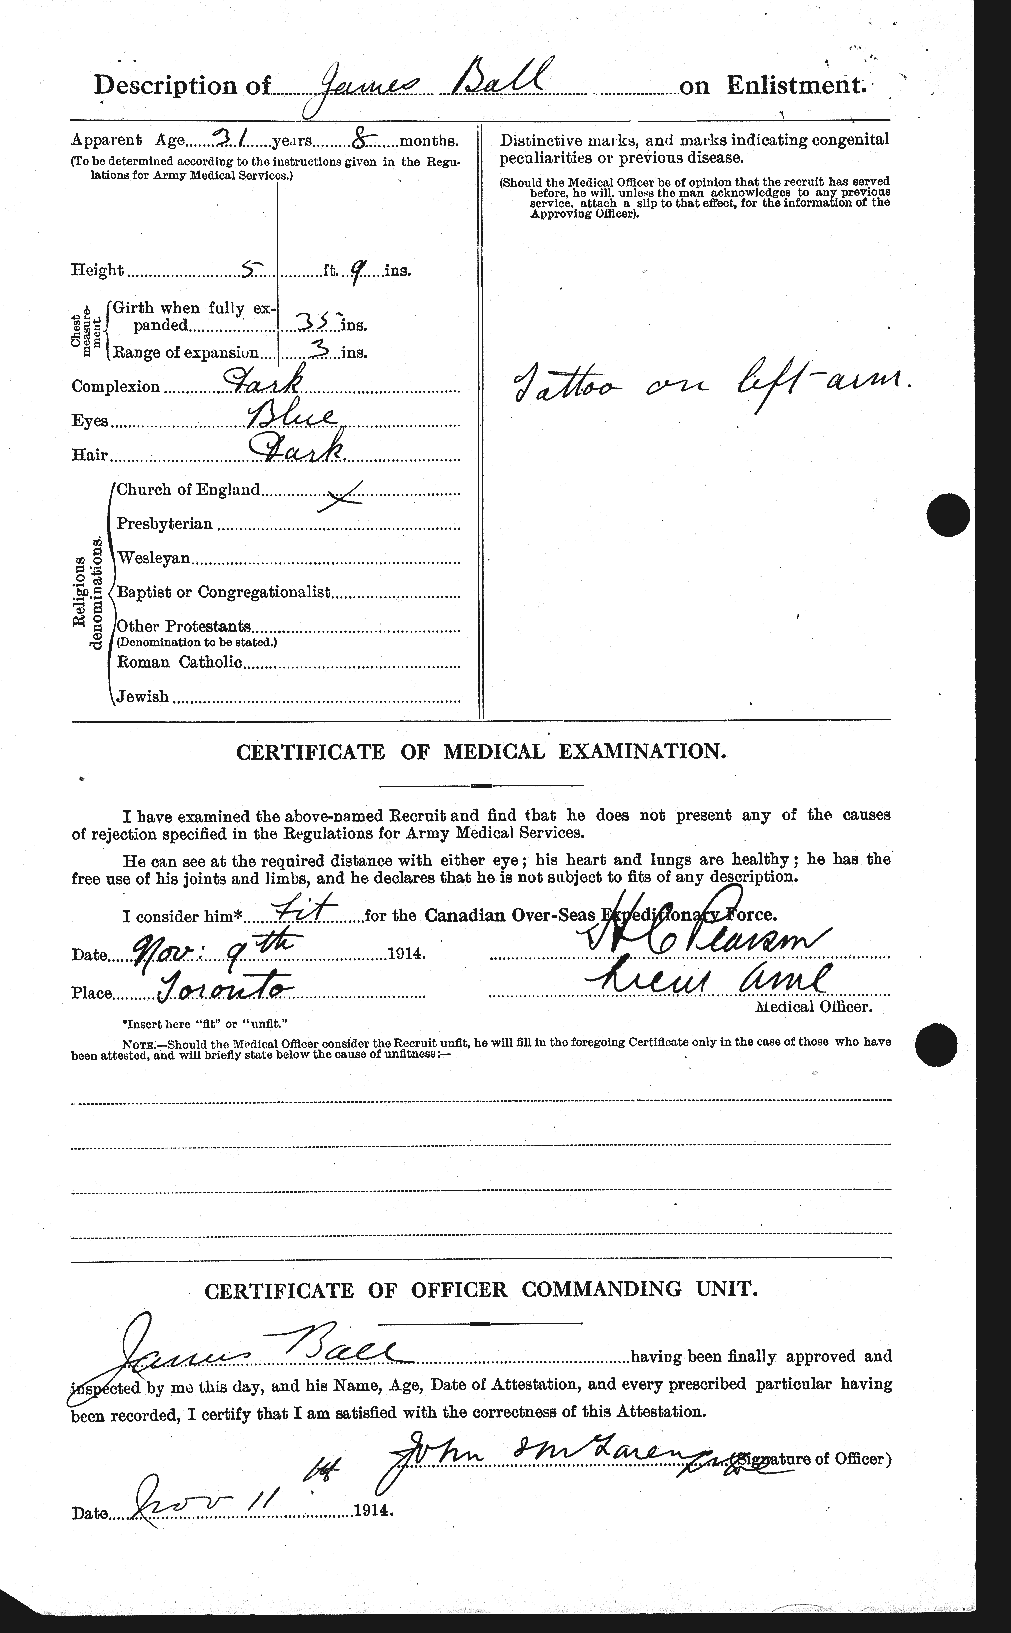 Dossiers du Personnel de la Première Guerre mondiale - CEC 225701b